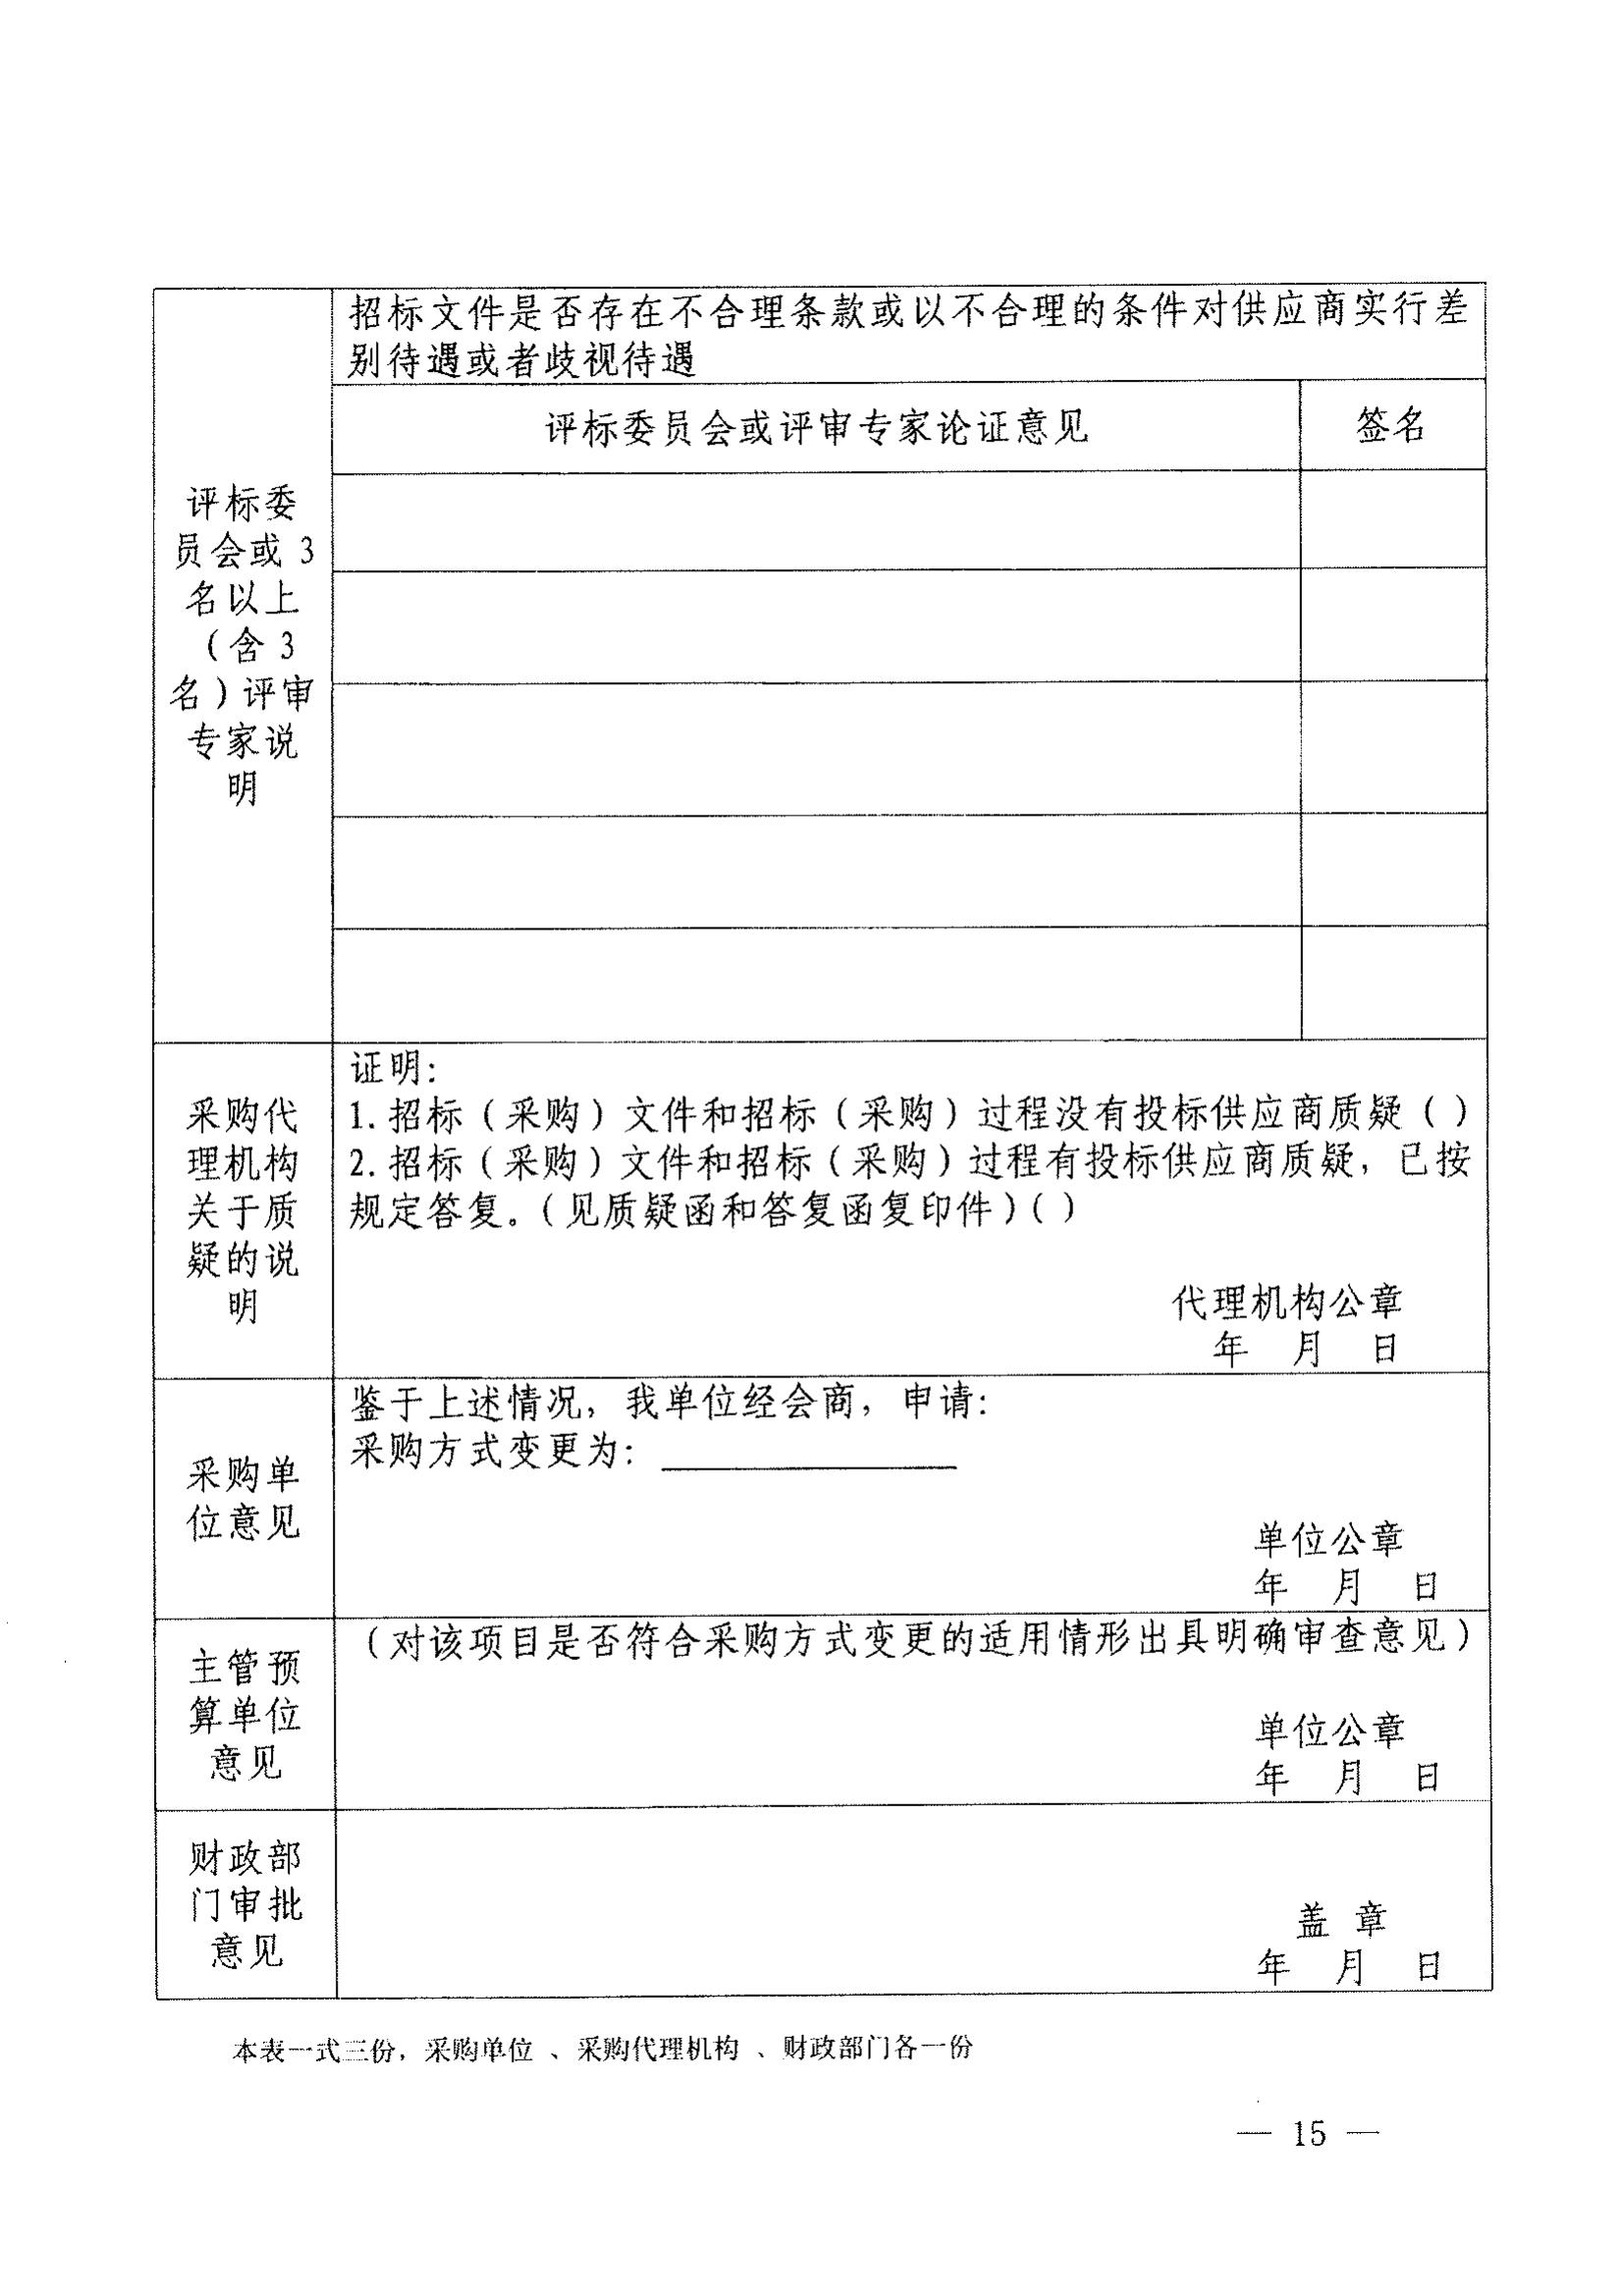 登封市财政局关于转发《郑州市财政局关于规范市级单一来源采购方式有关事项的通知》通知(图17)